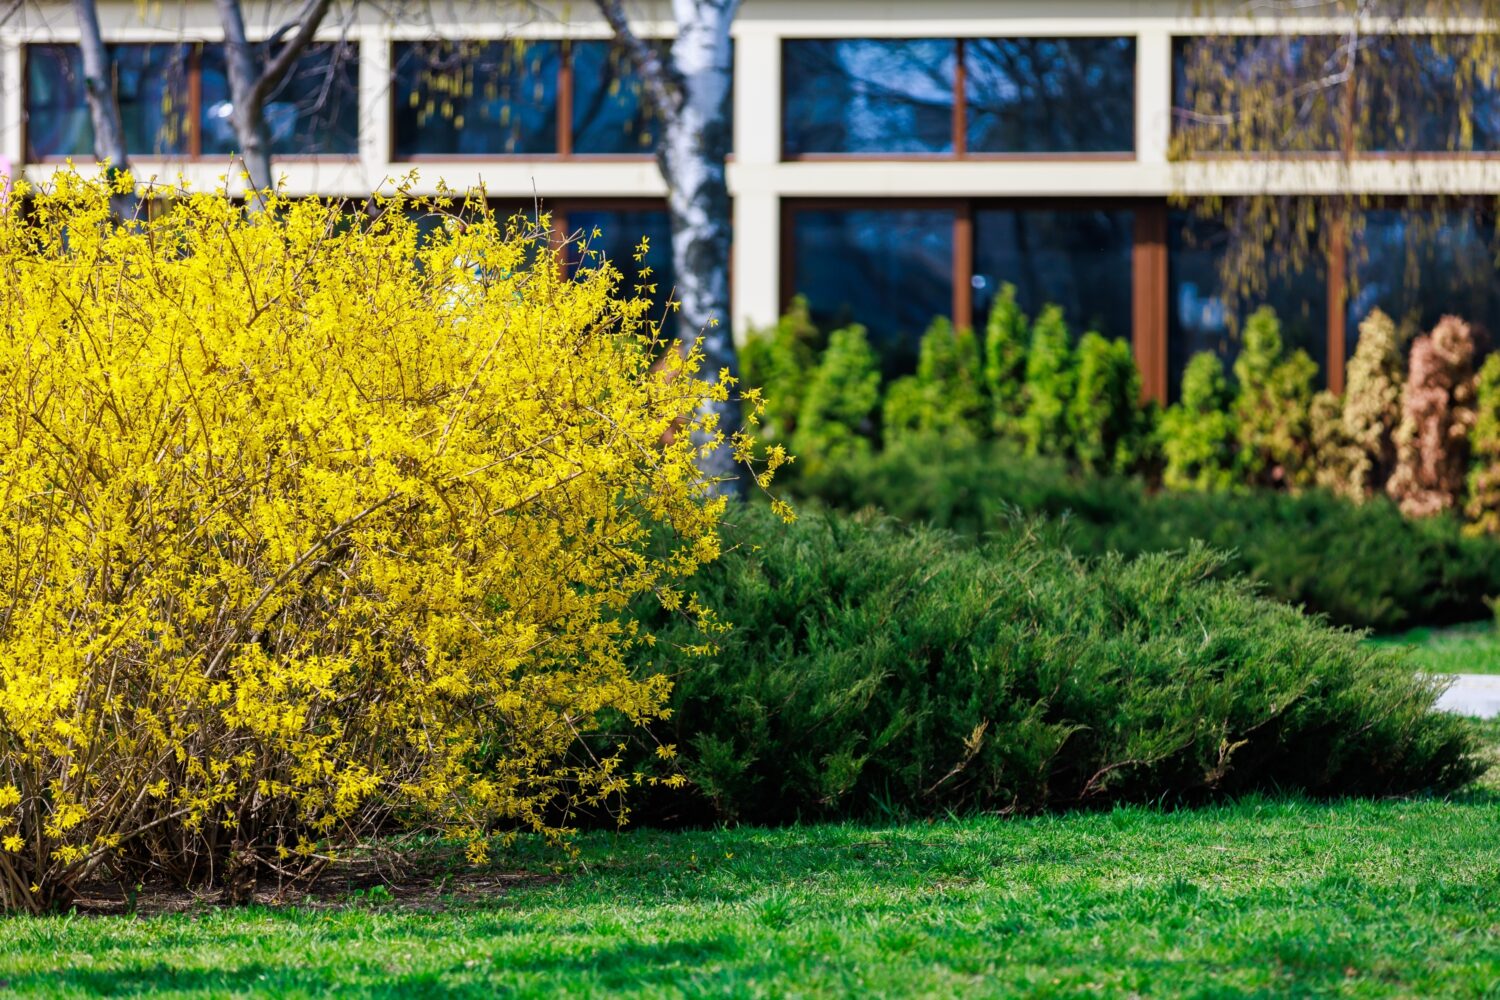 Cespuglio giallo di Forsythia di fioritura in primavera.  Messa a fuoco selettiva.  Sfondo con spazio per copiare testo o iscrizione